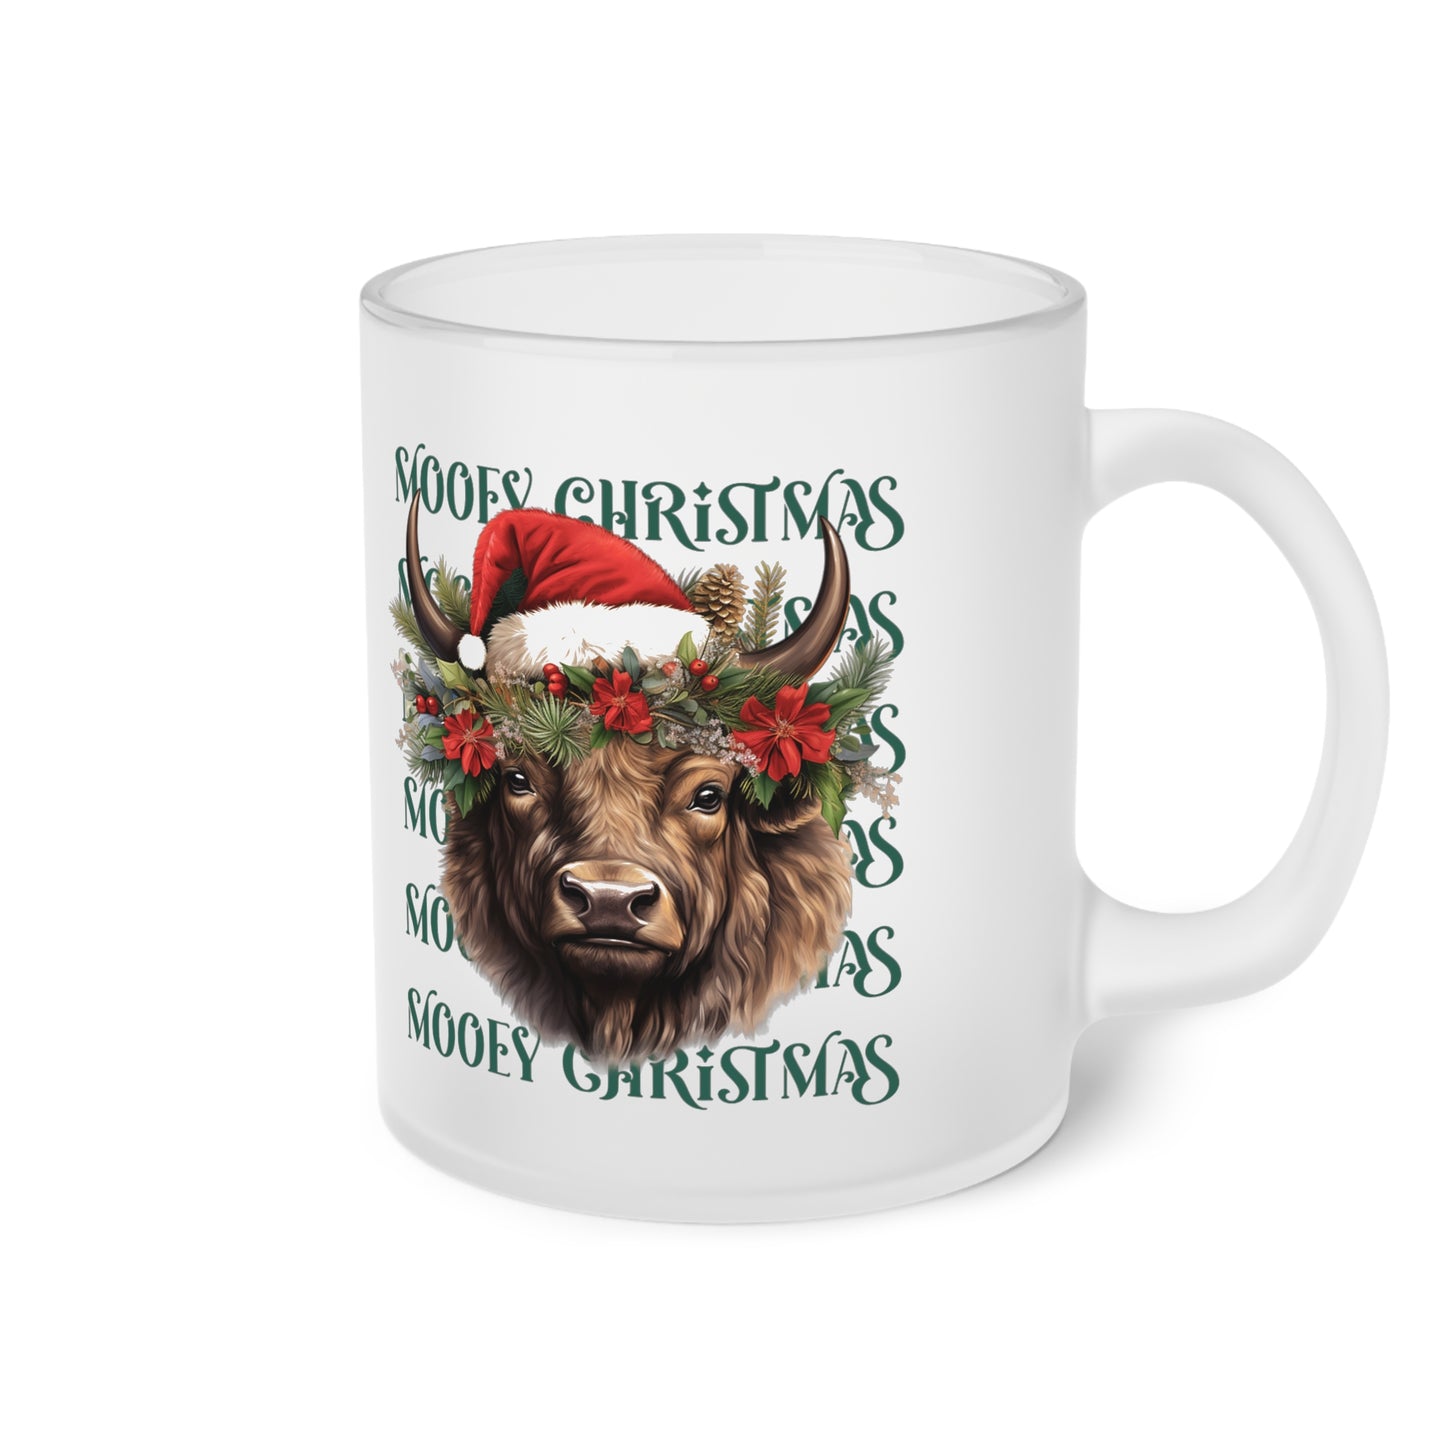 Frosted Glass Mug, Cute Christmas Mug, Cow Bull Themed Holiday Mug, Frosted Mug, Cute Coffee Mug, Holiday Coffee Mug, Frosted Holiday Coffee Mug